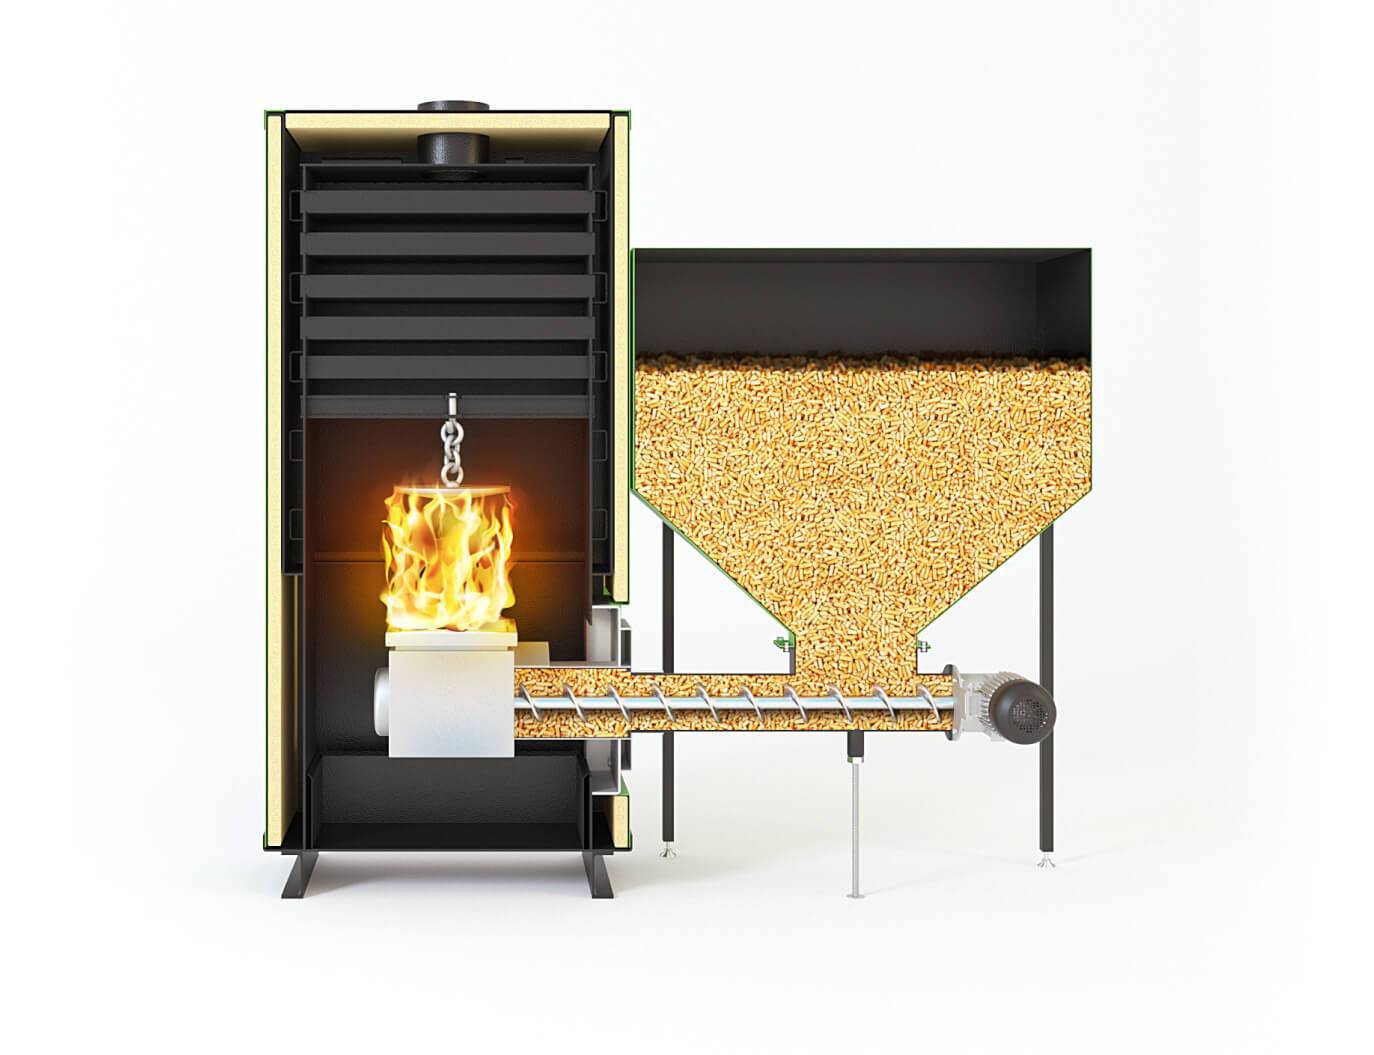 Пеллетная печь: печка на пеллетах автоматическая, пеллетный котел с водяным контуром, отопительная печка длительного горения